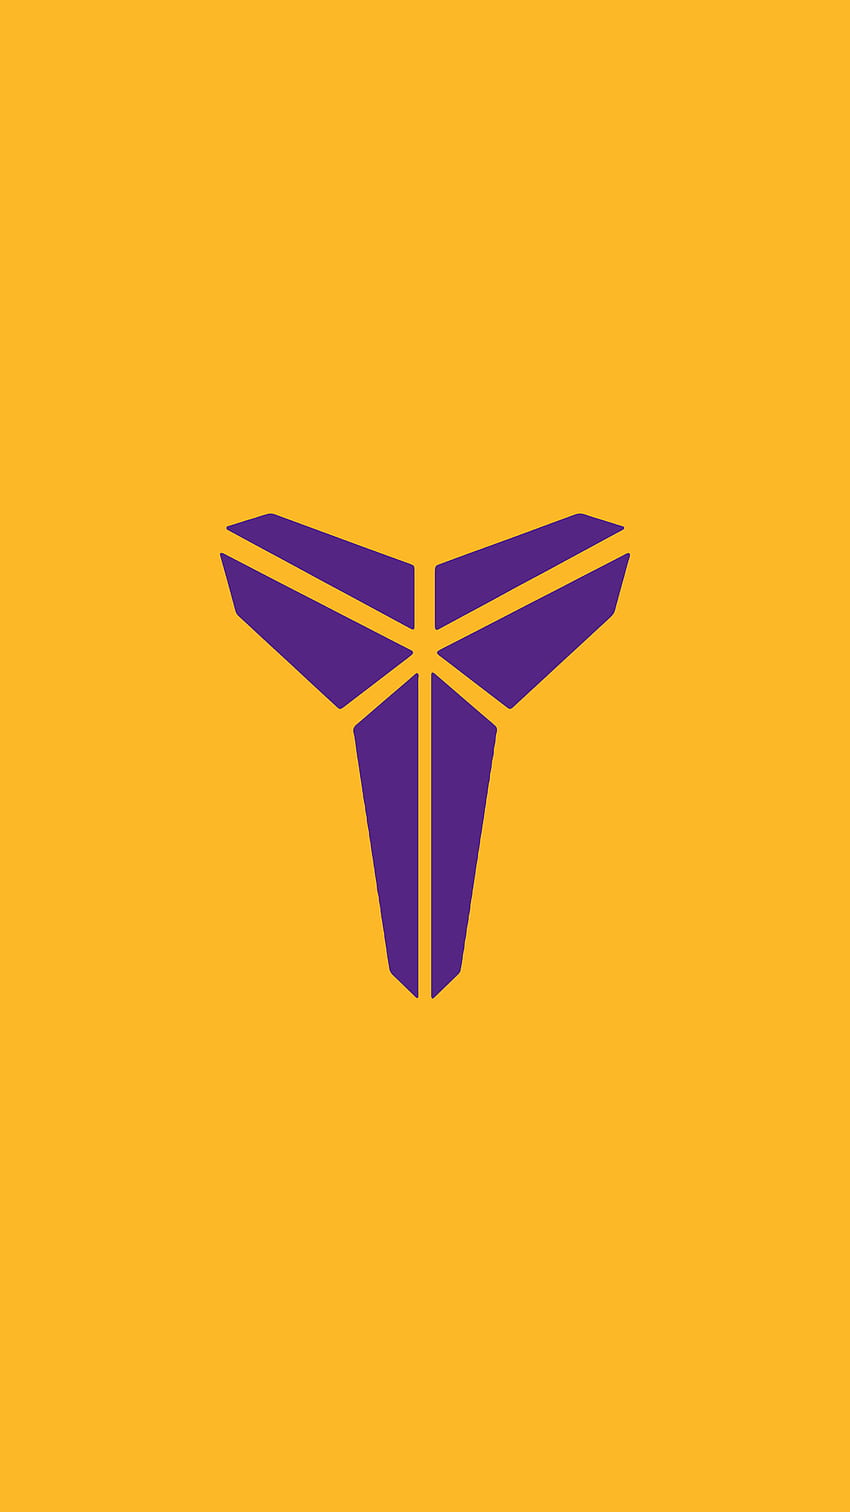 NBA: What if Kobe Bryant becomes the NBA's logo? | Marca